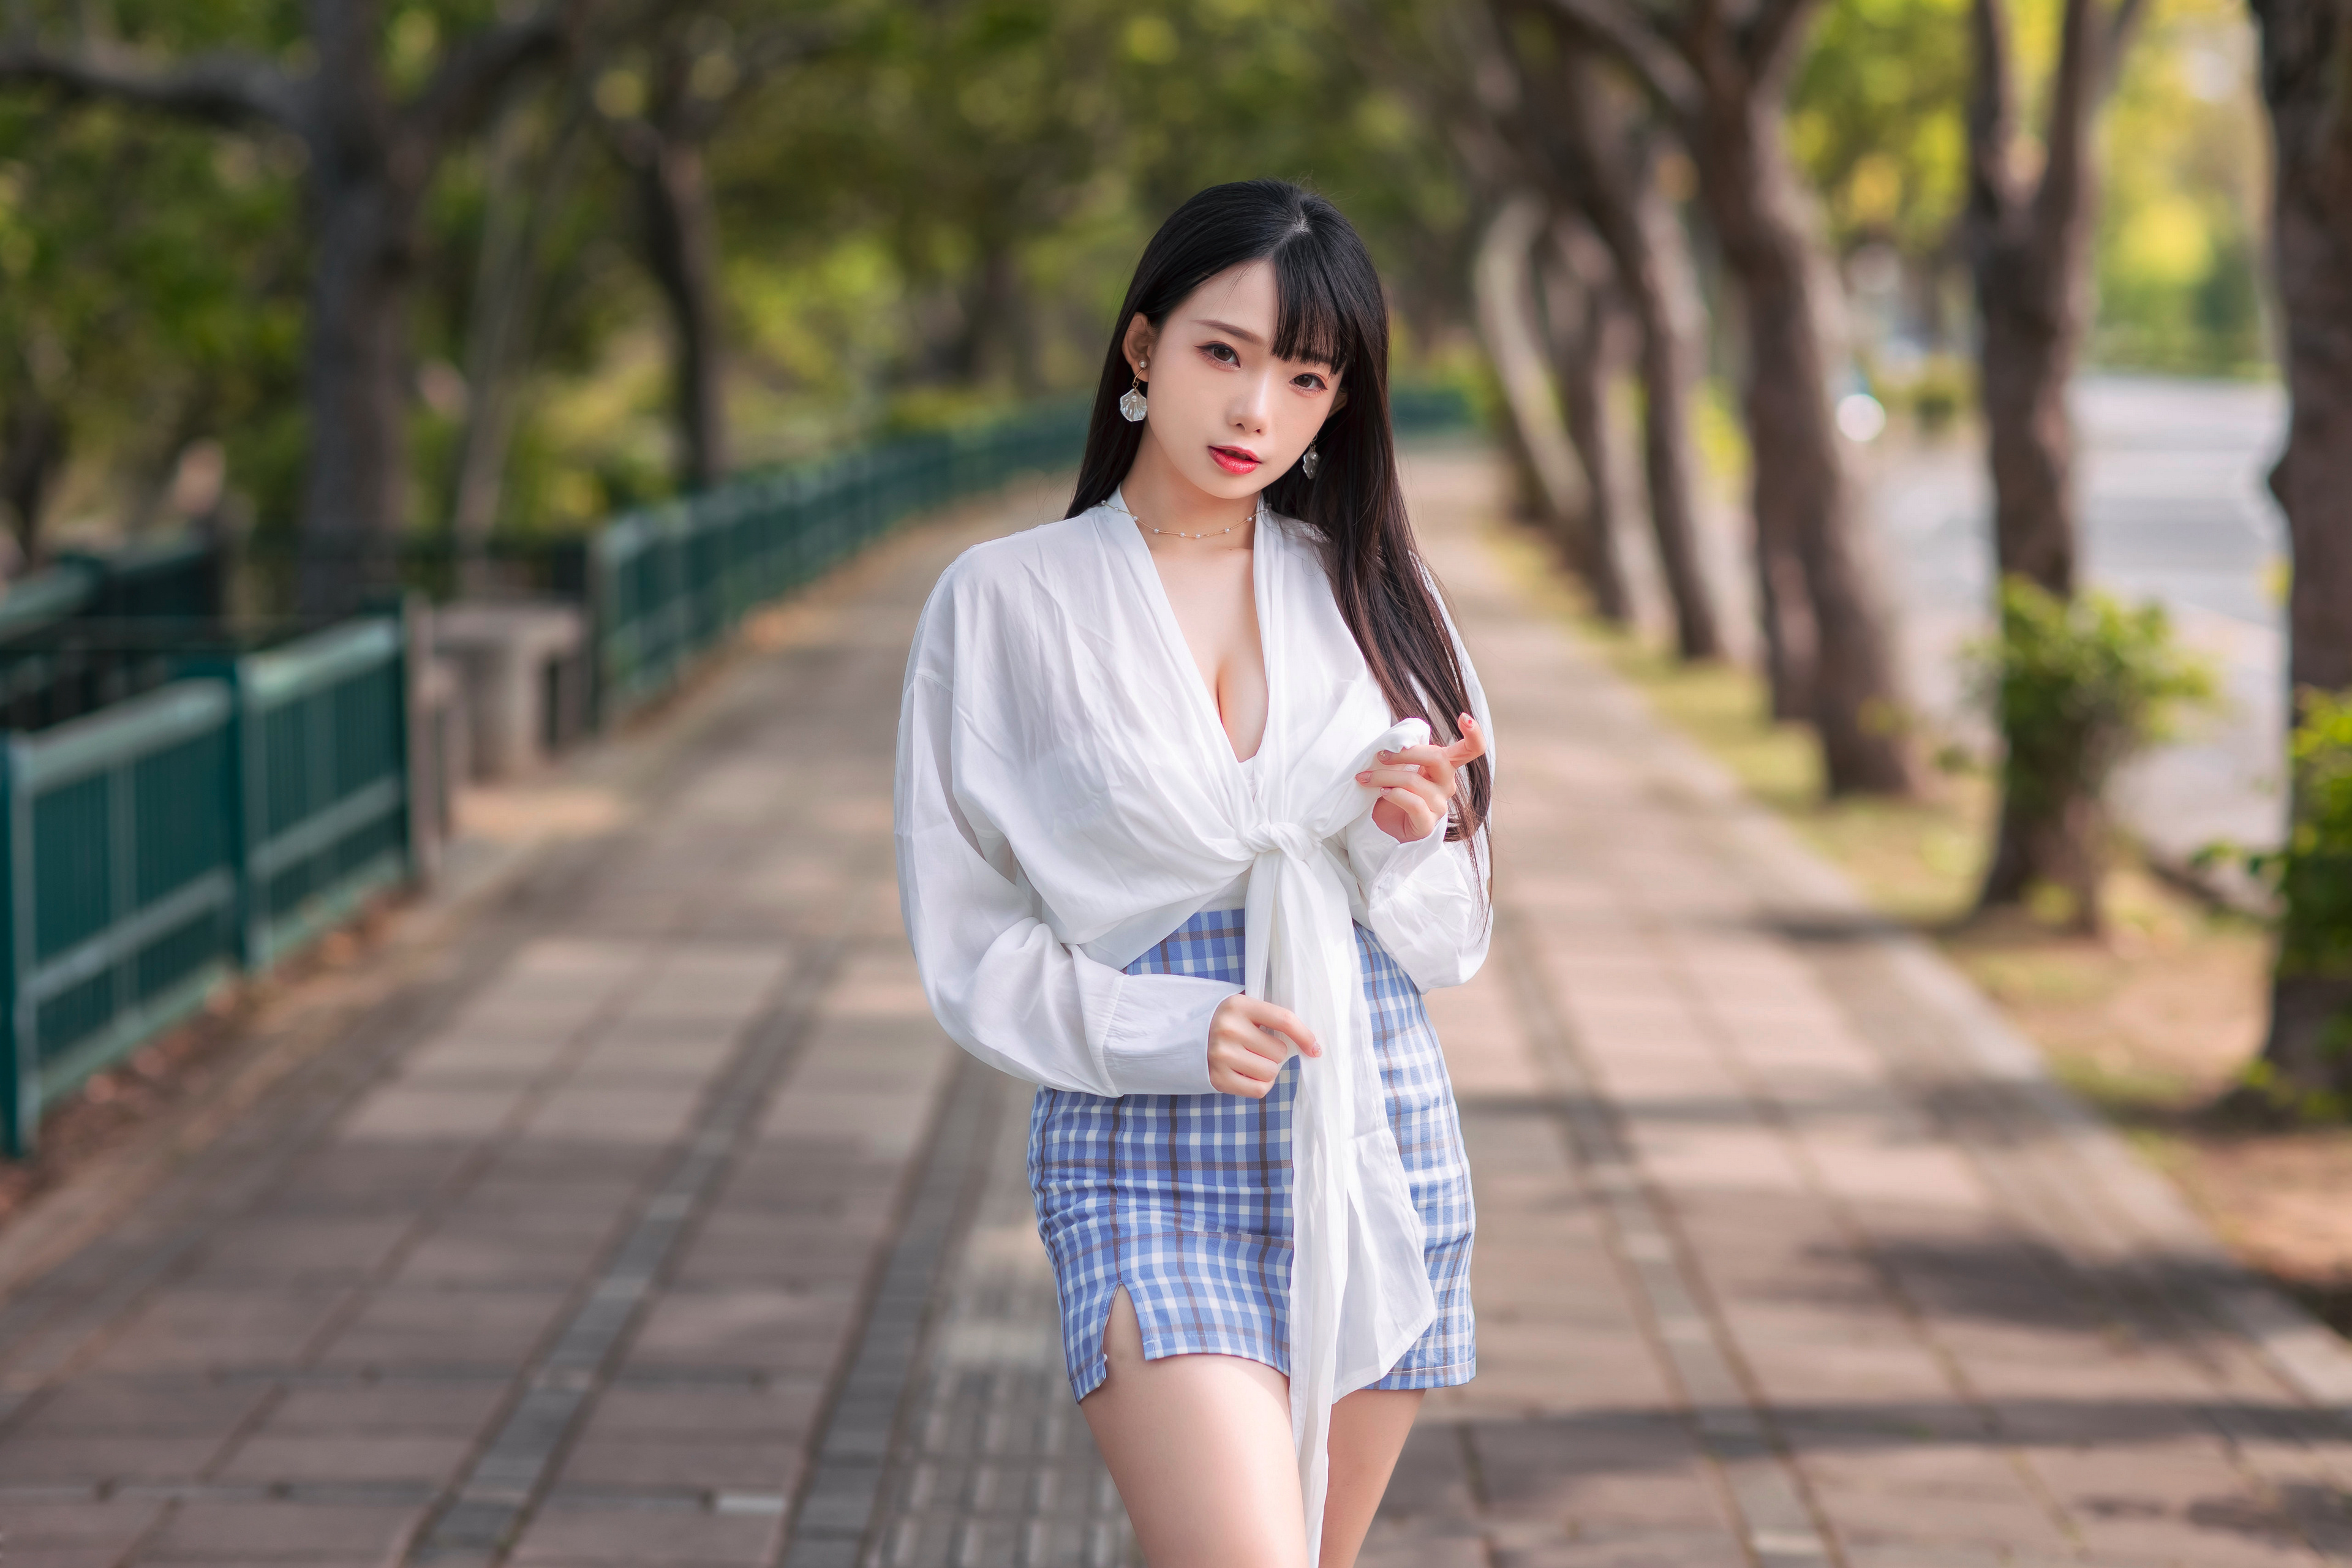 Asian Model Women Long Hair Black Hair Short Skirt Blouse Depth Of Field Trees Fence Earring Grass N 3840x2560